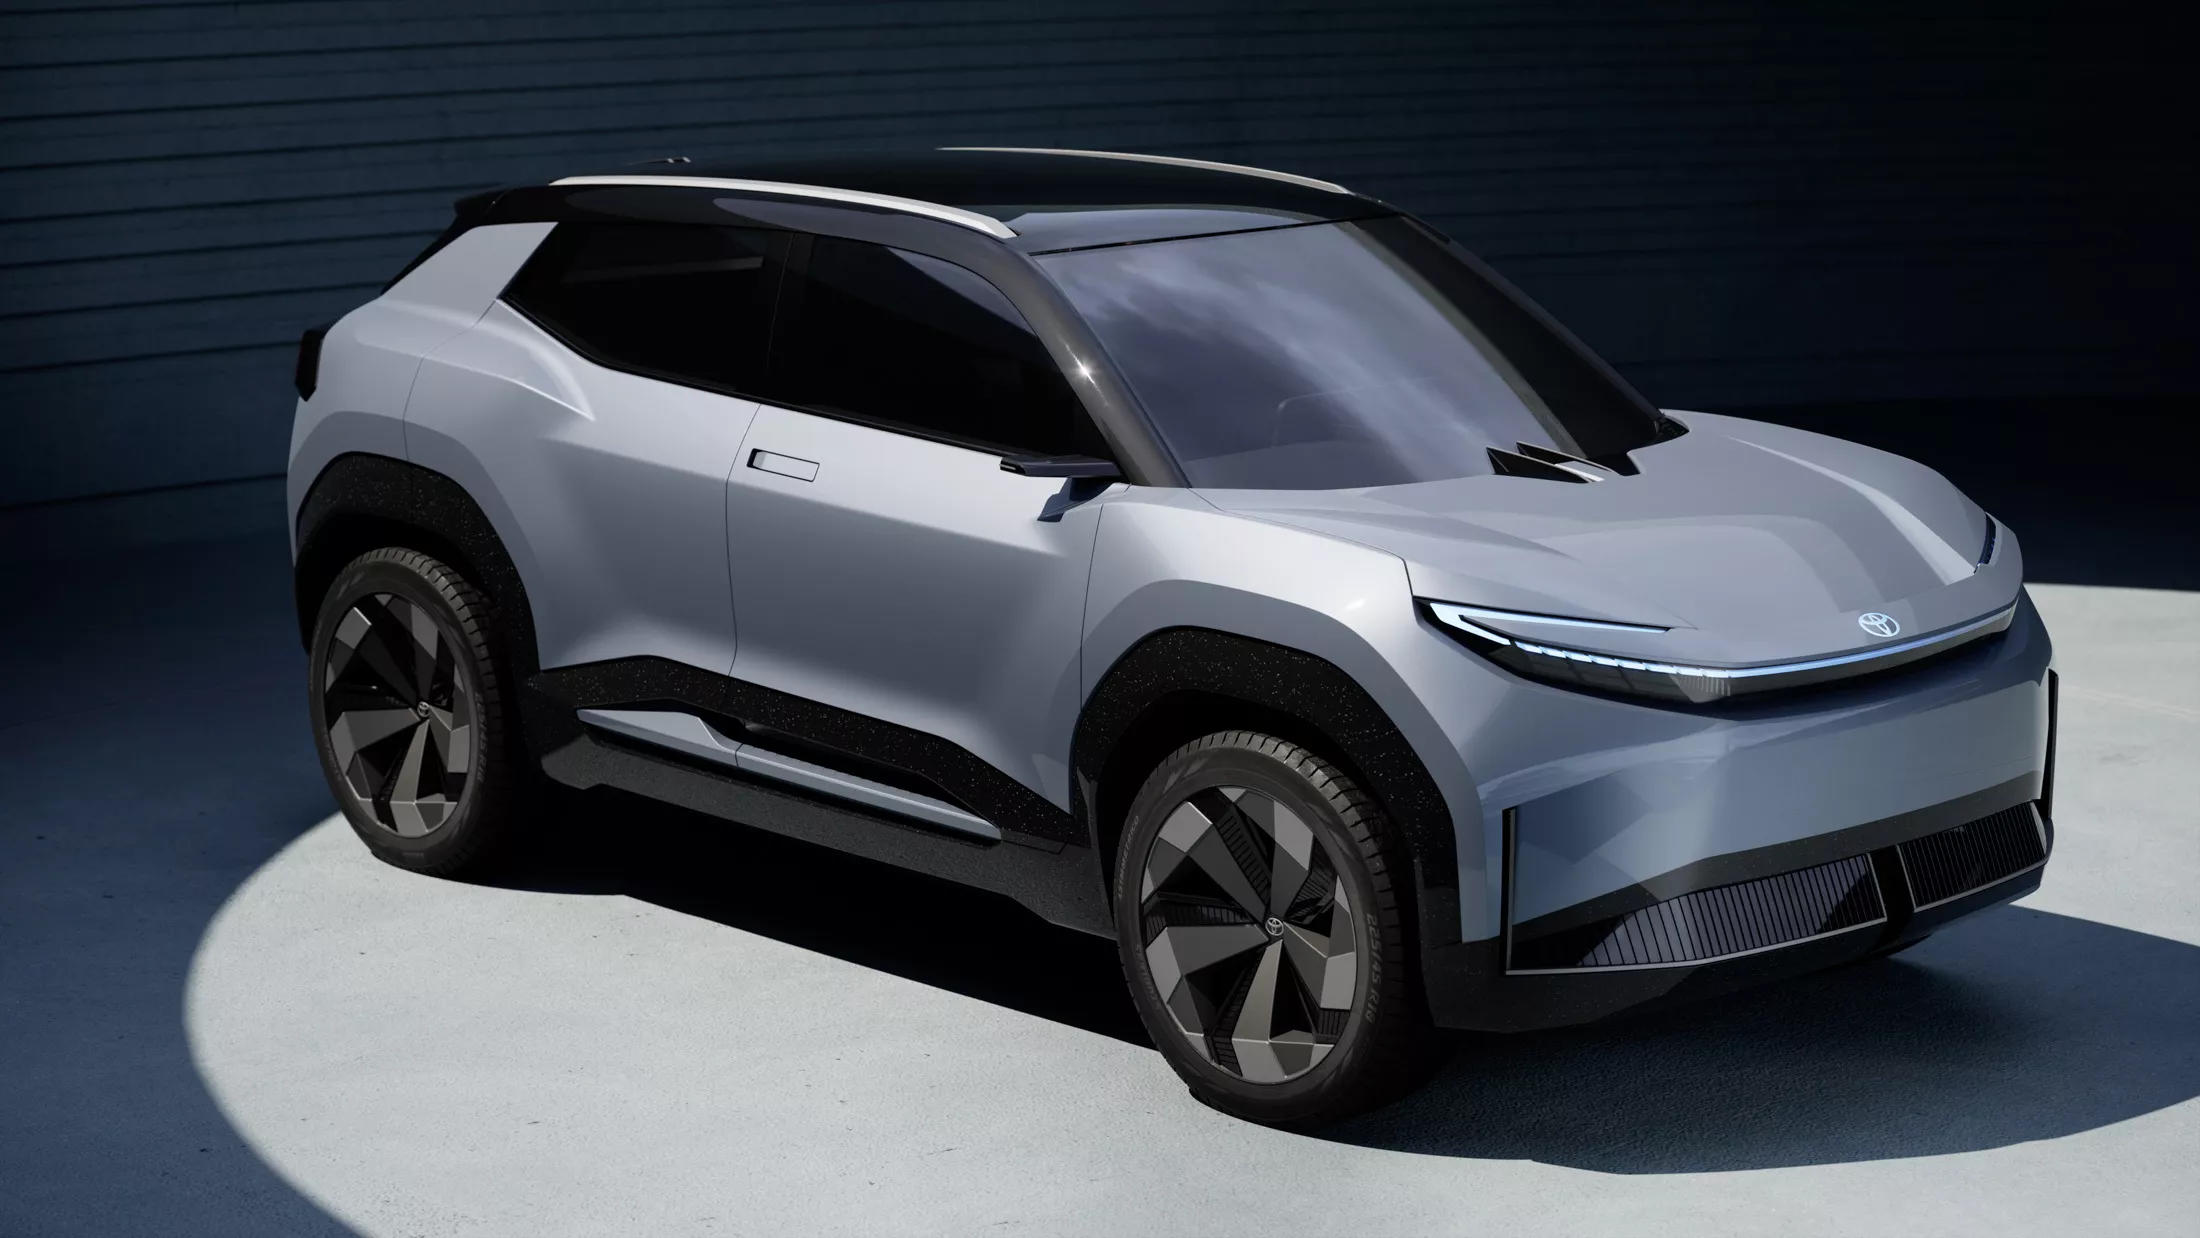 Toyota Urban SUV Concept – xe đô thị gầm cao thuần điện mới toanh